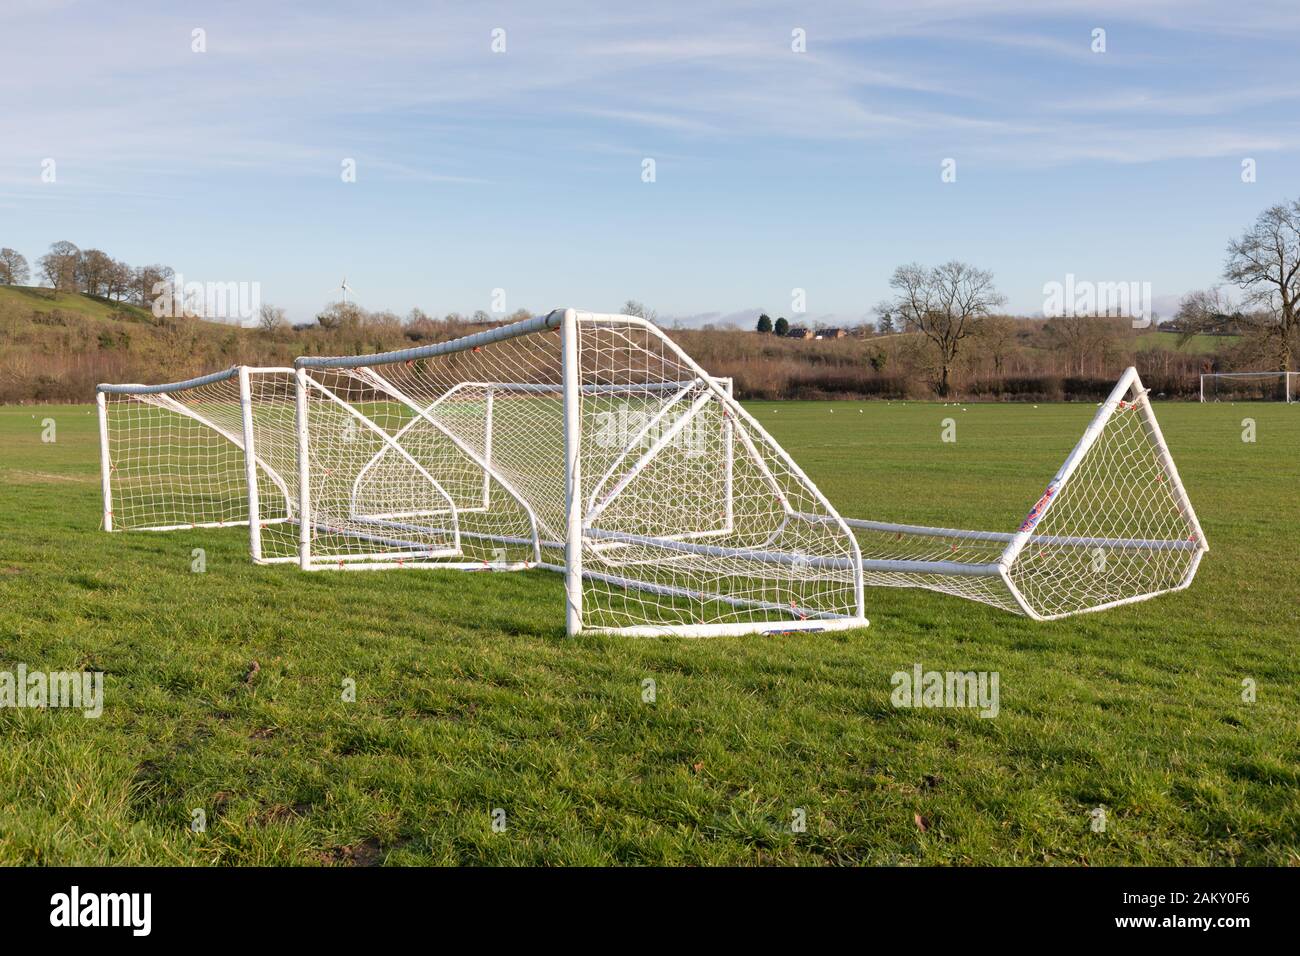 Crick, Northamptonshire, Royaume-Uni: Quatre bouches de football à cinq côtés à cadre blanc et en réseau, qui s'allongés sur l'herbe d'un terrain de jeu en milieu rural. Banque D'Images